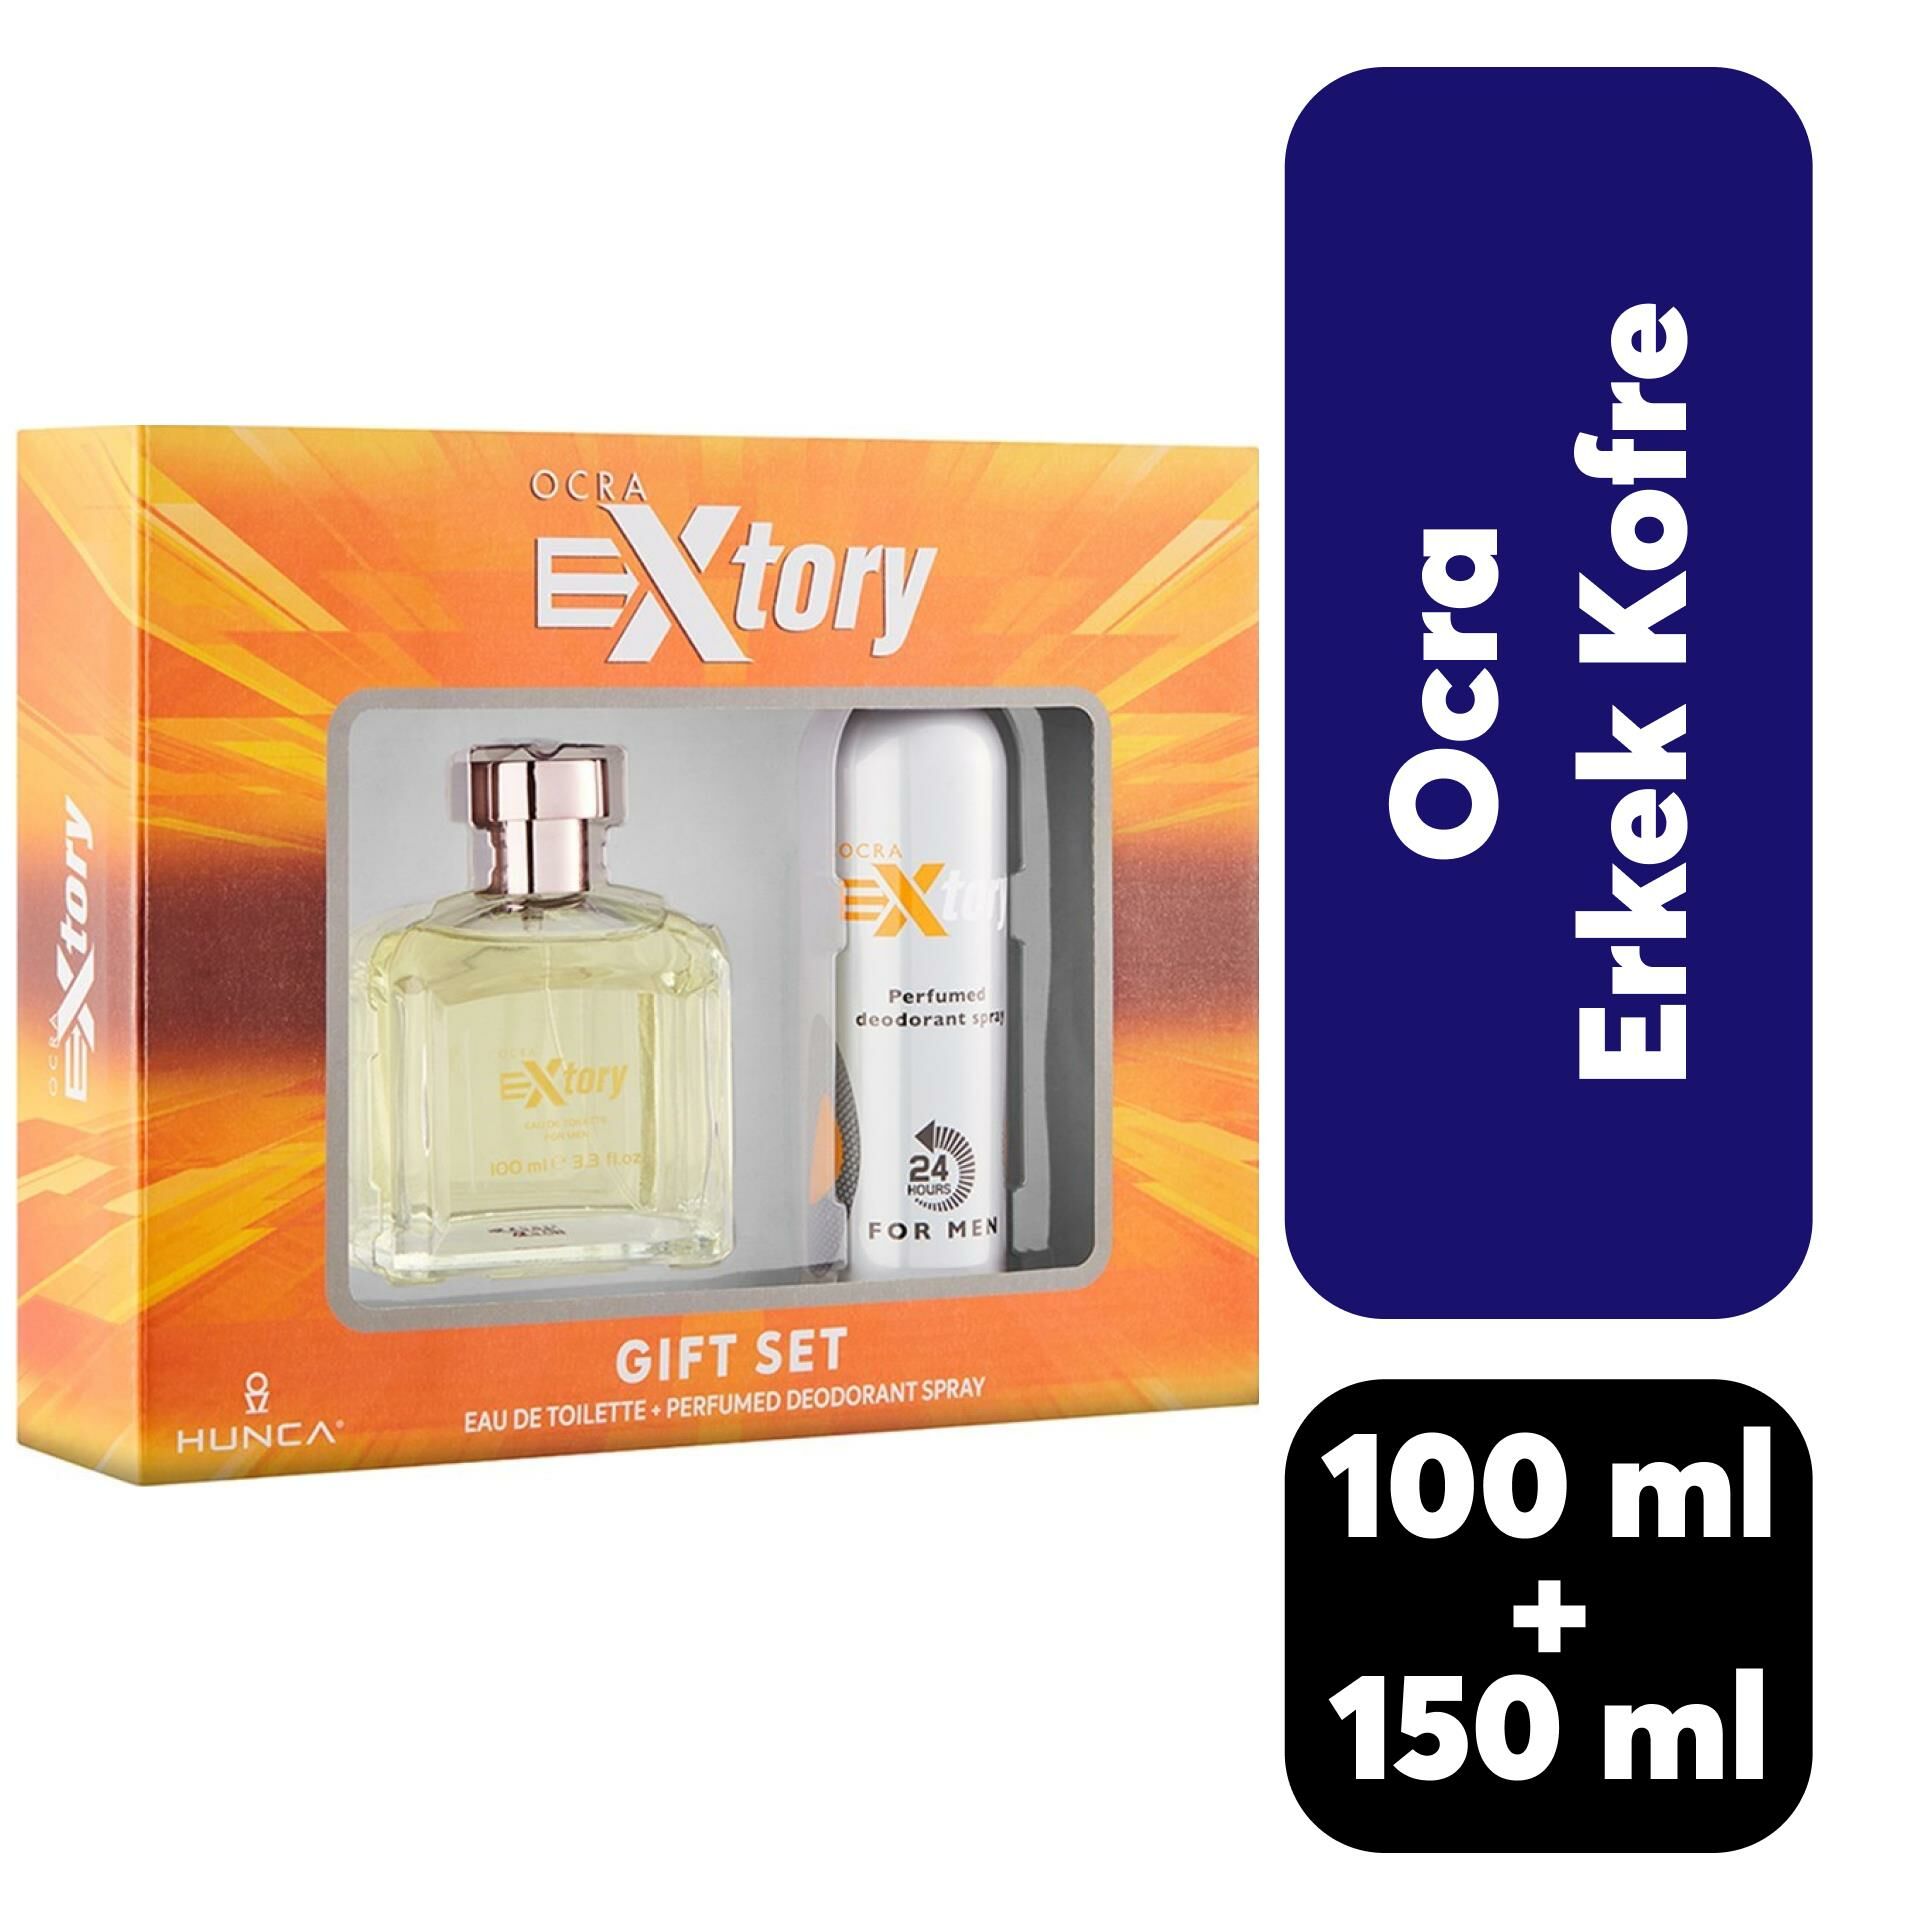 Kofre Extory Erkek Parfüm 100 ml + Deodorant 150 ml Ocra